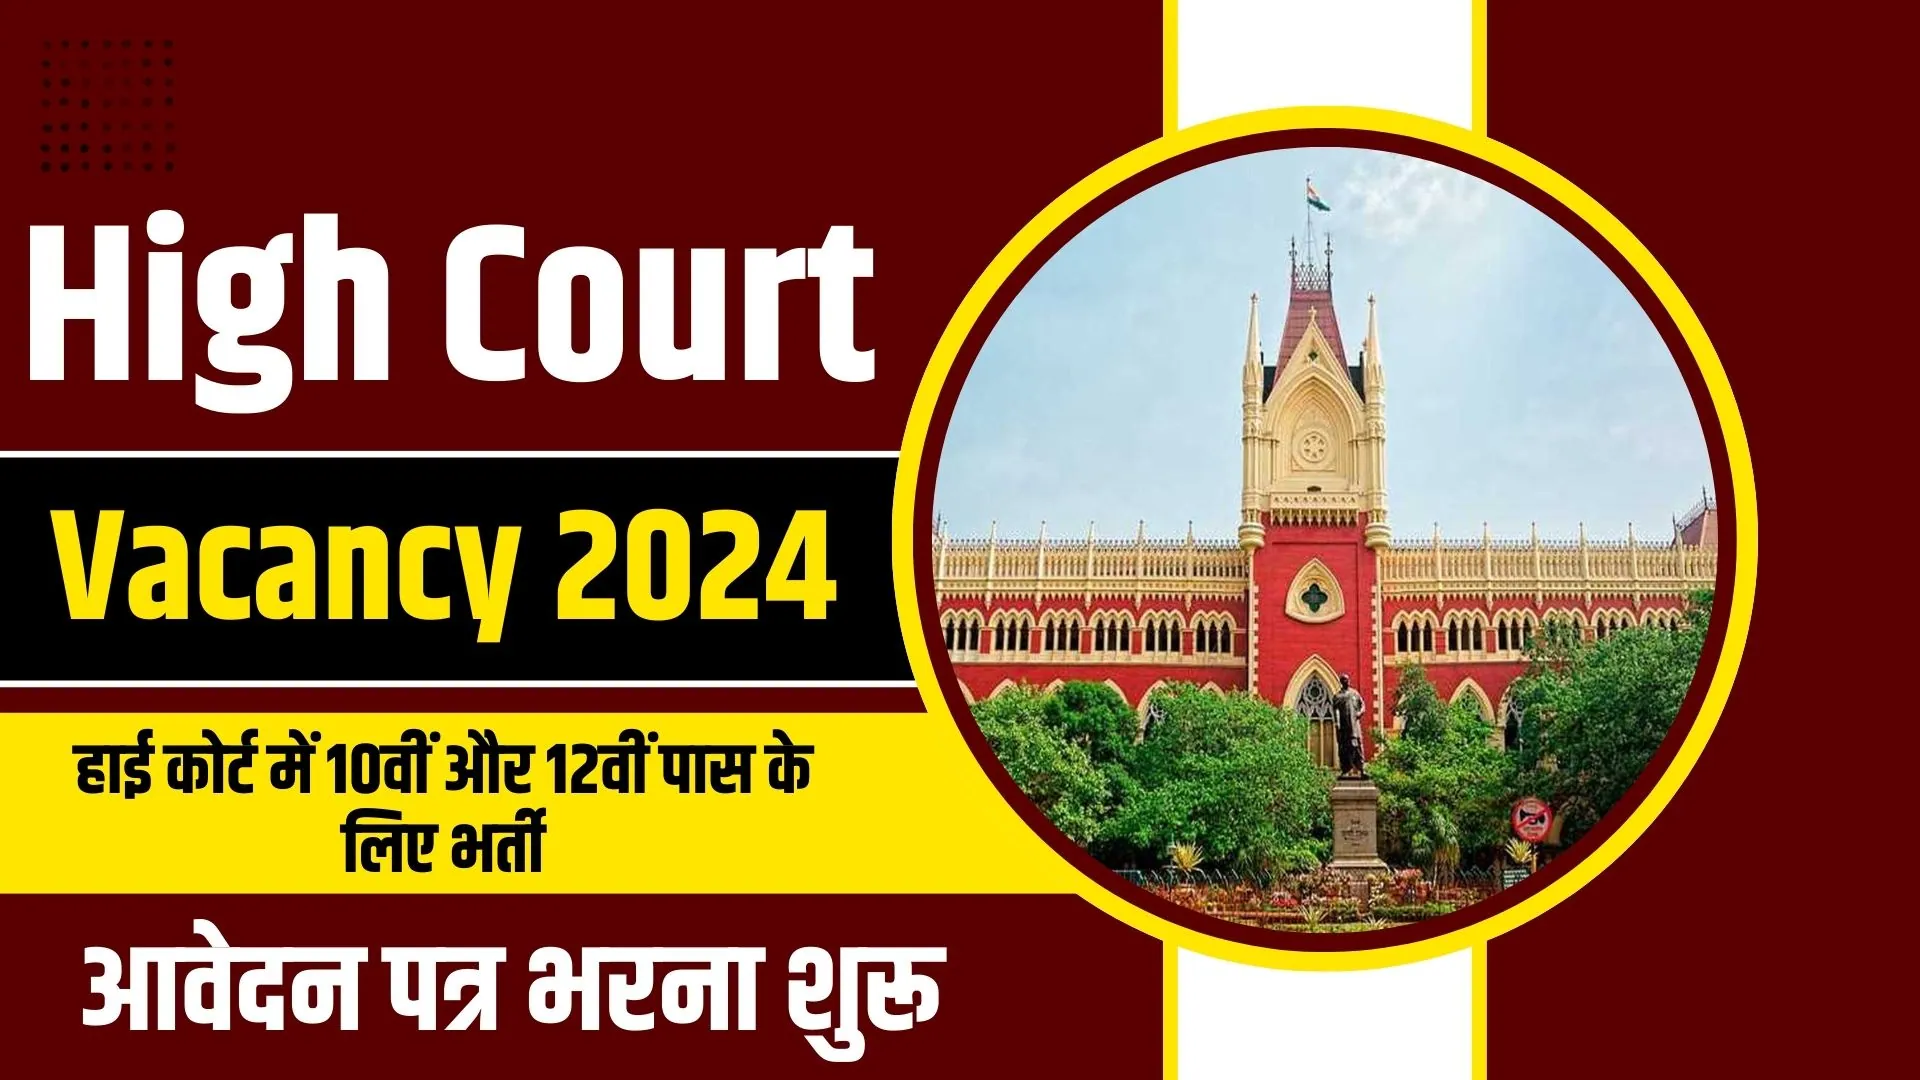 High Court Vacancy 2024: हाई कोर्ट में 10वीं और 12वीं पास के लिए भर्ती, आवेदन पत्र भरना शुरू